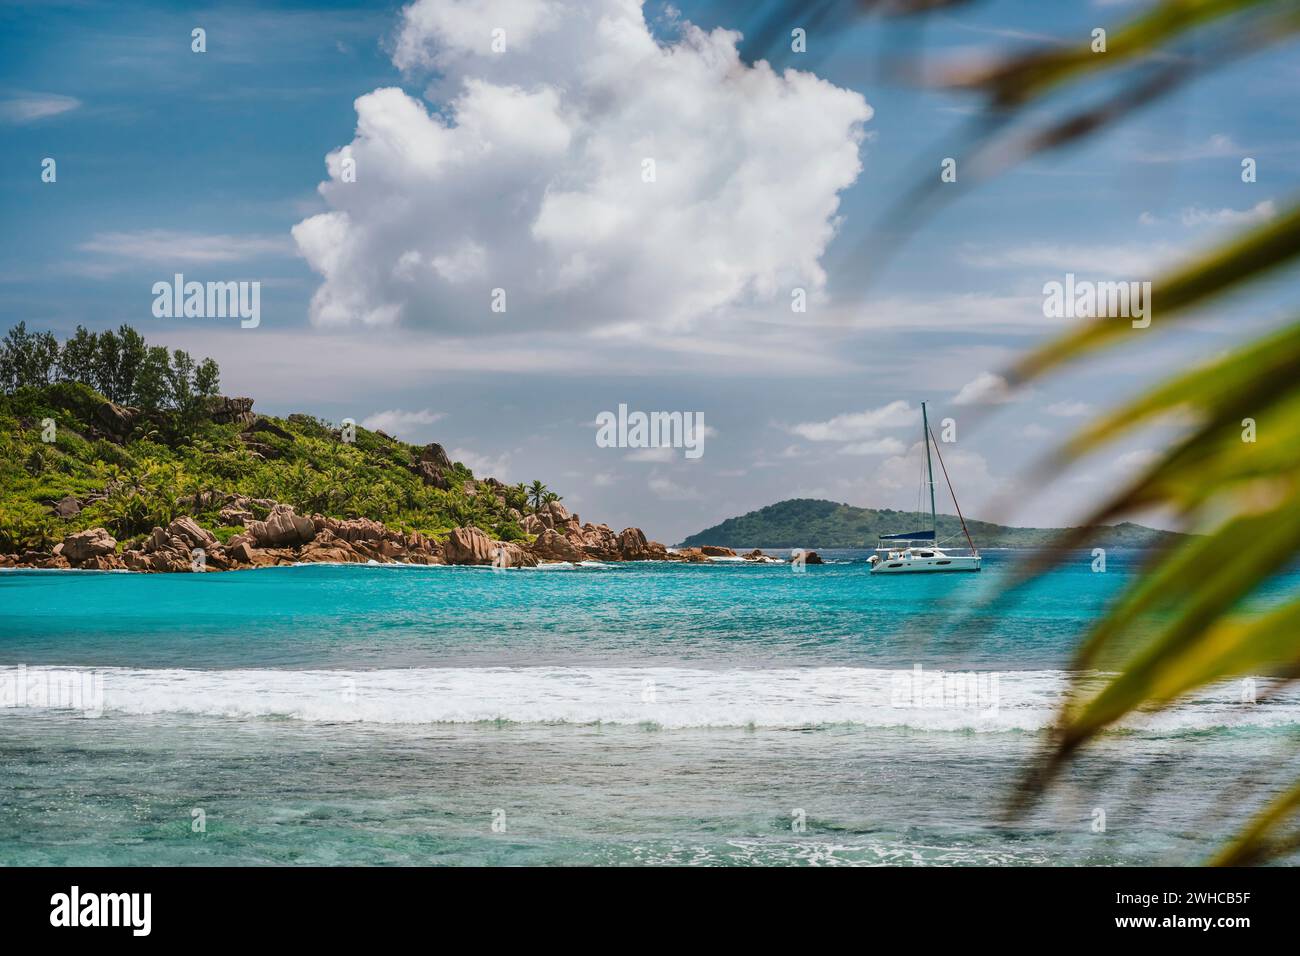 Laguna blu poco profonda, onde bianche dell'oceano e yacht solitario presso la spiaggia di Anse Cocos, l'isola di la Digue, Seychelles. Destinazione di viaggio di lusso. Foto Stock